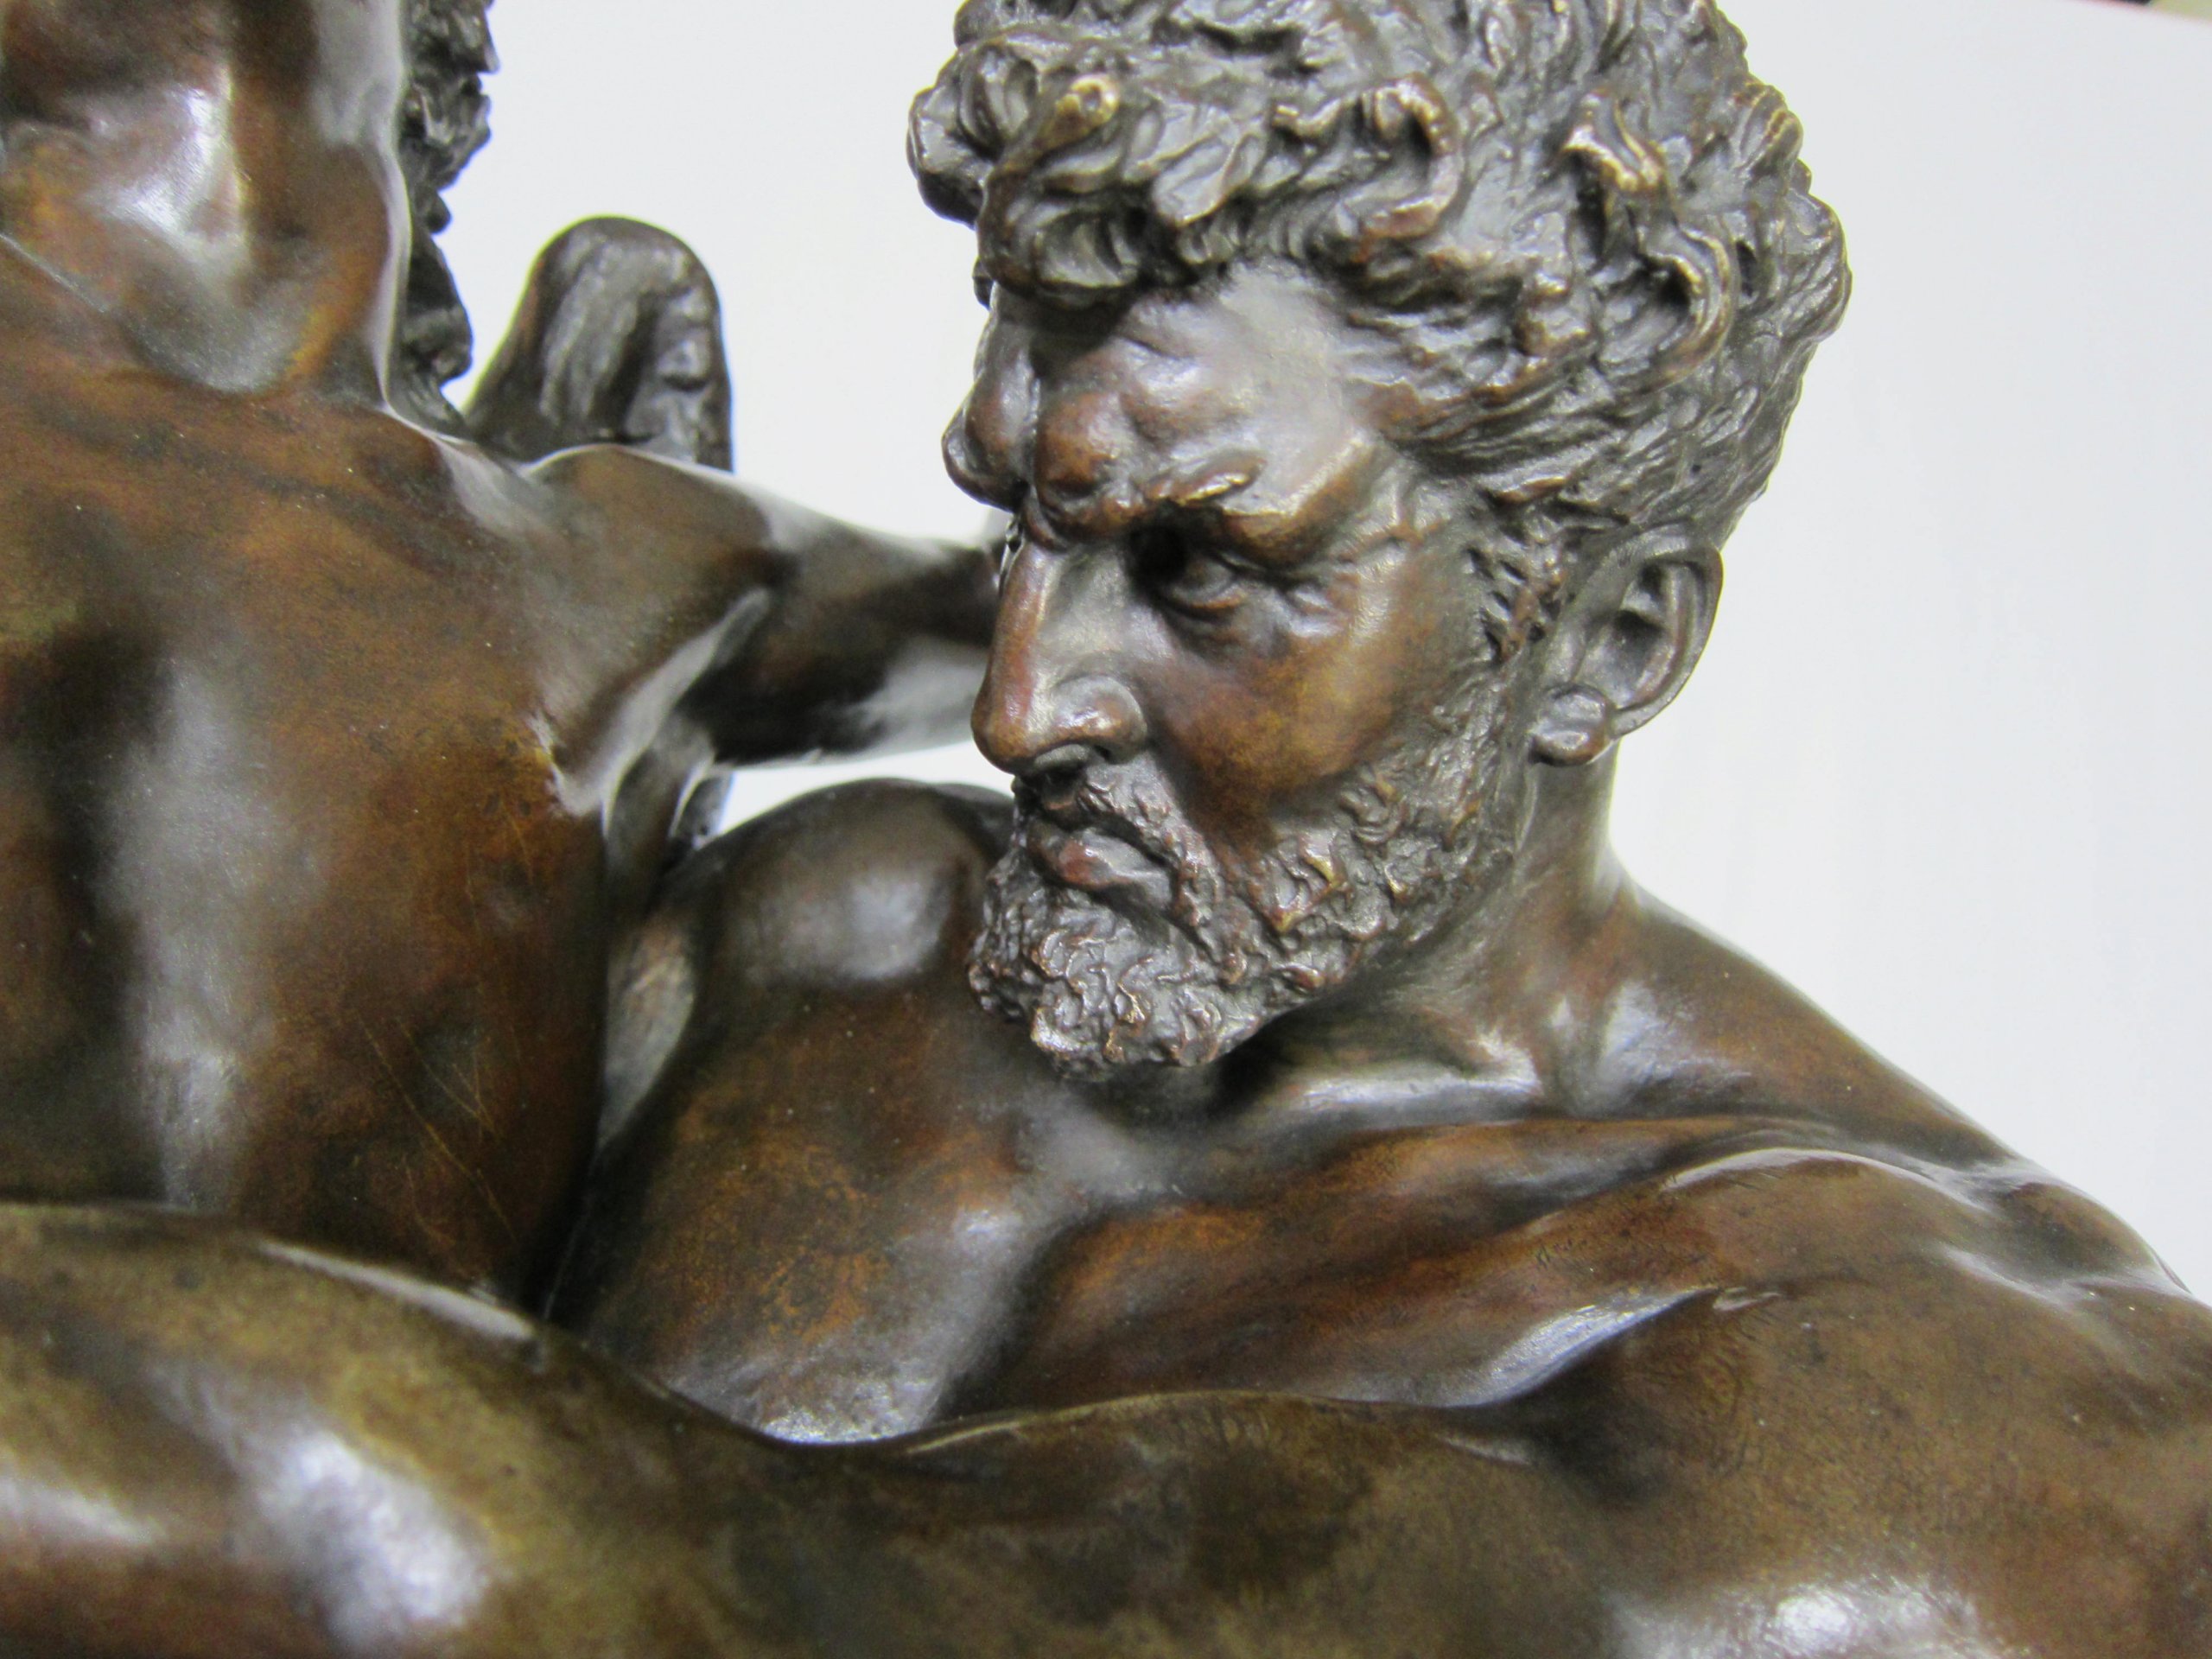 Antique bronze sculpture Genius and brute force.